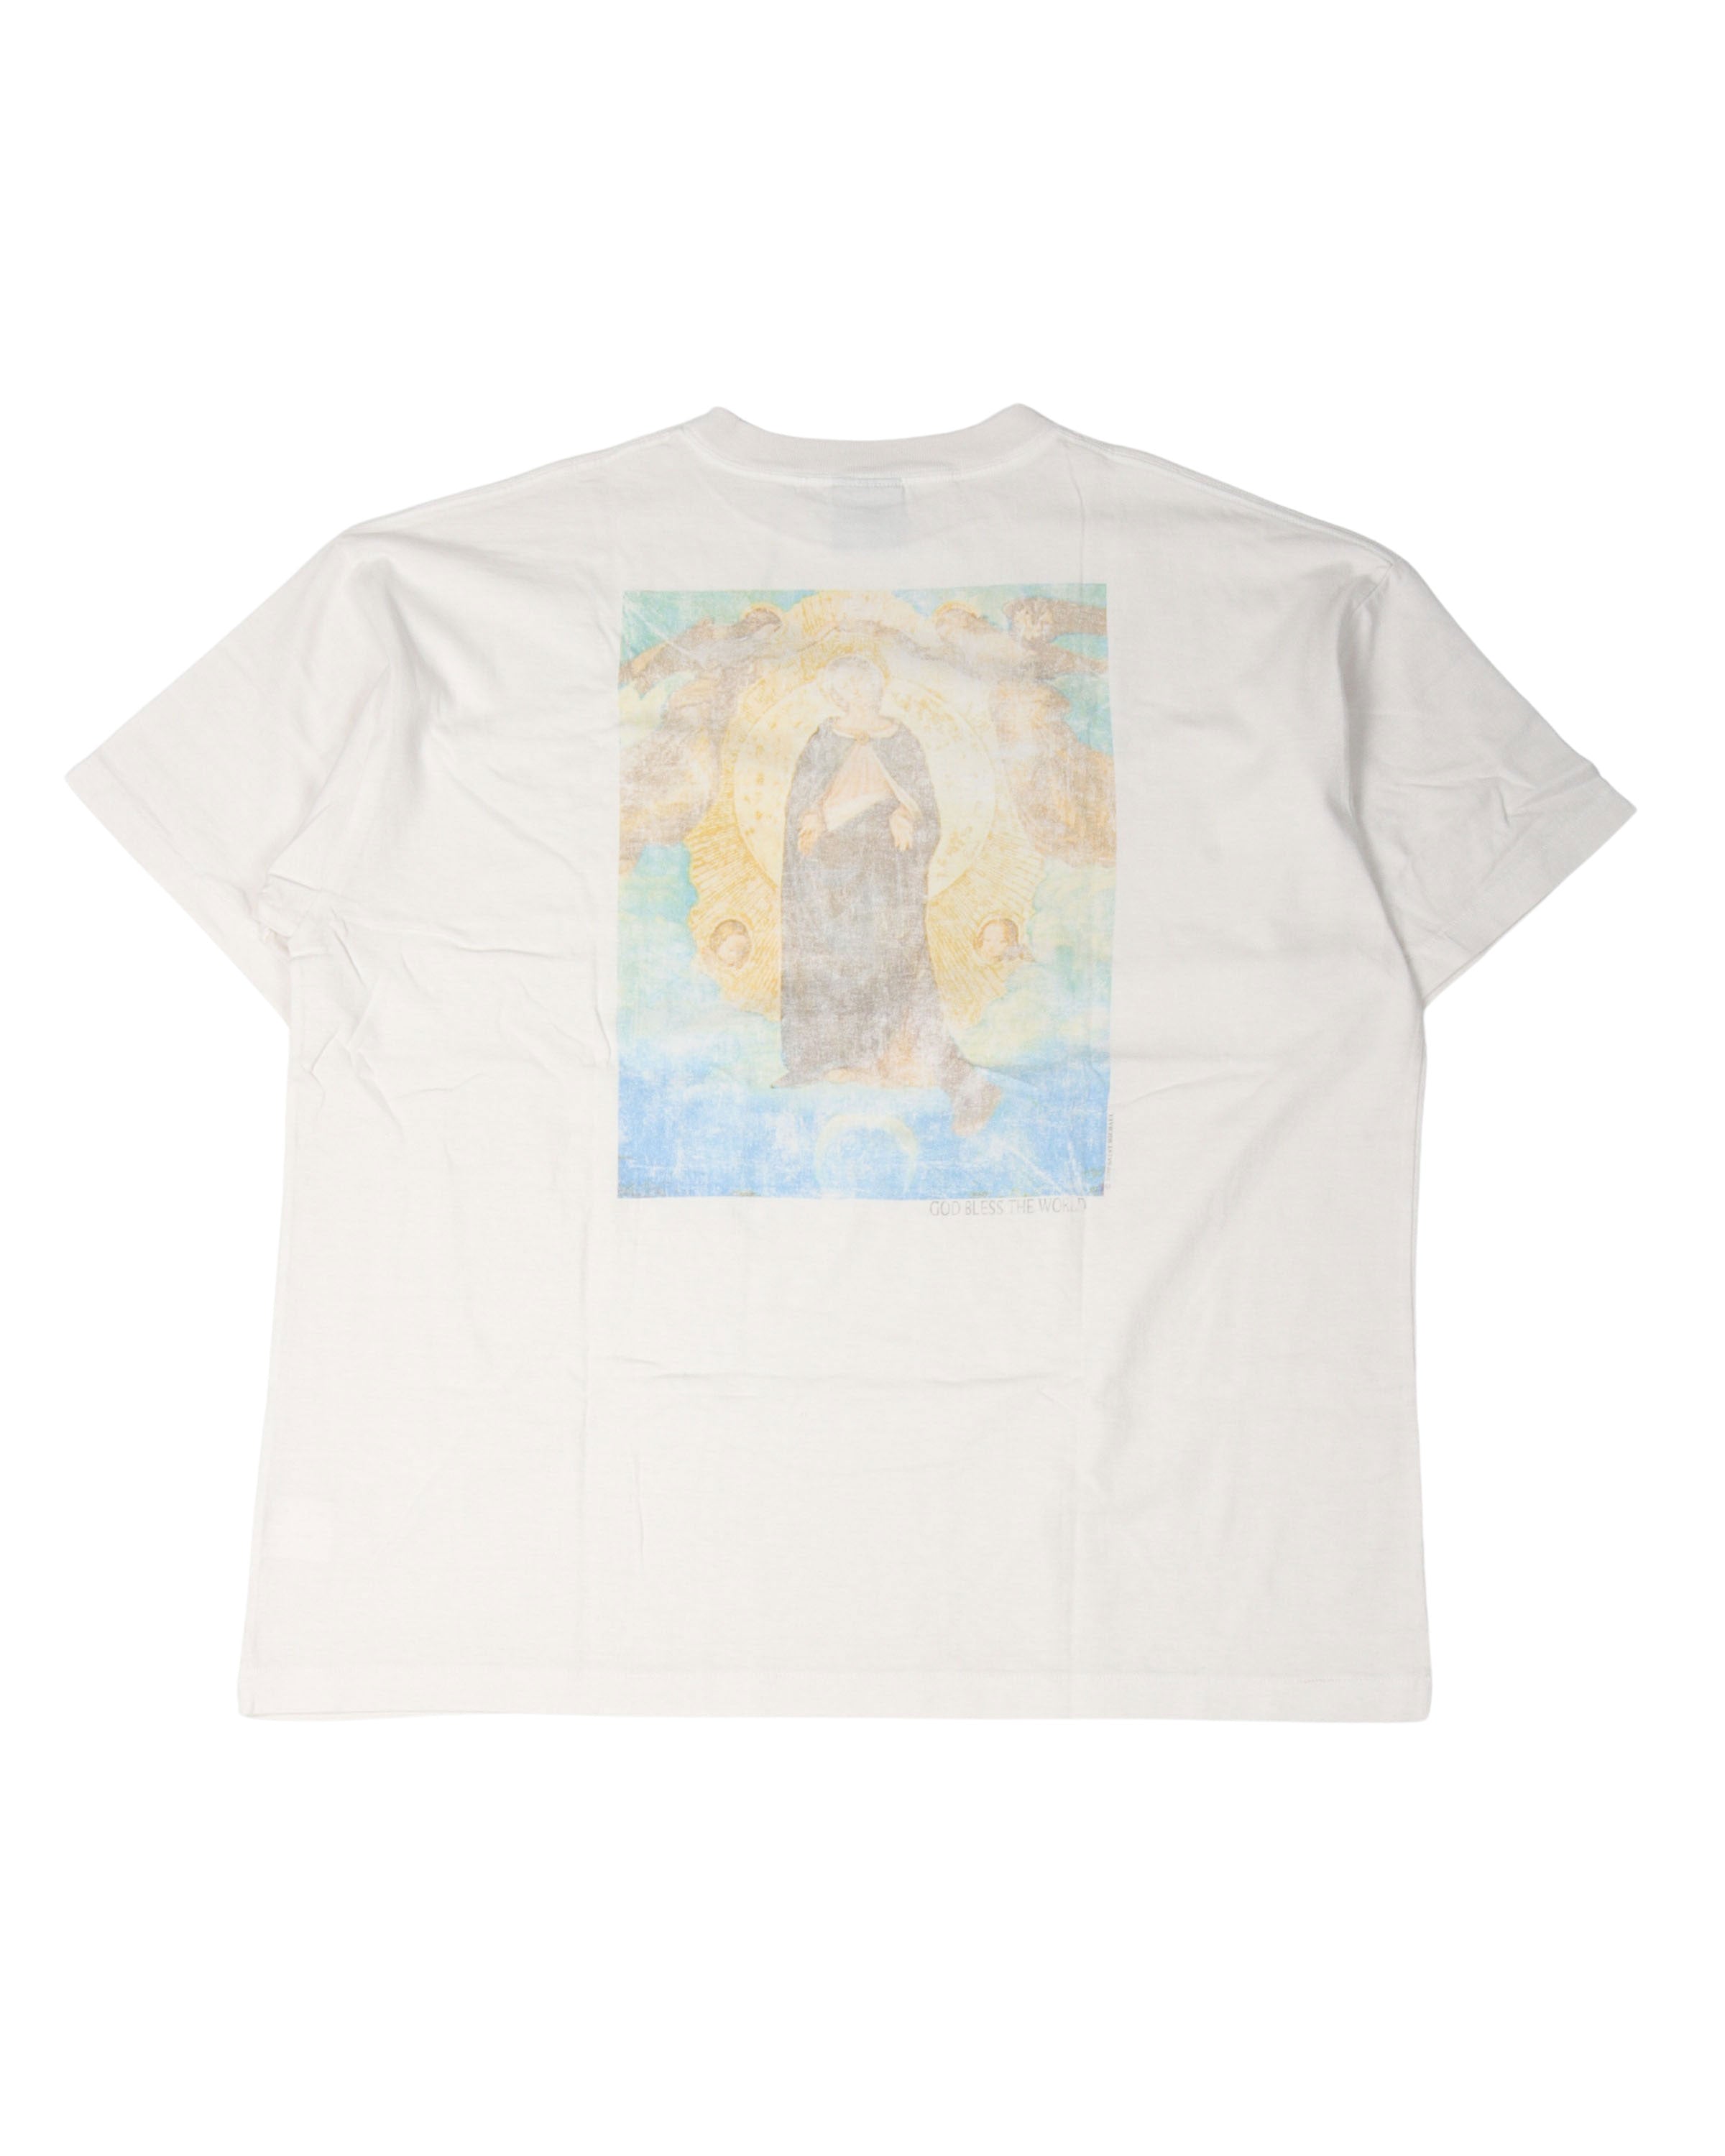 Jesus Christ Memorial T-Shirt